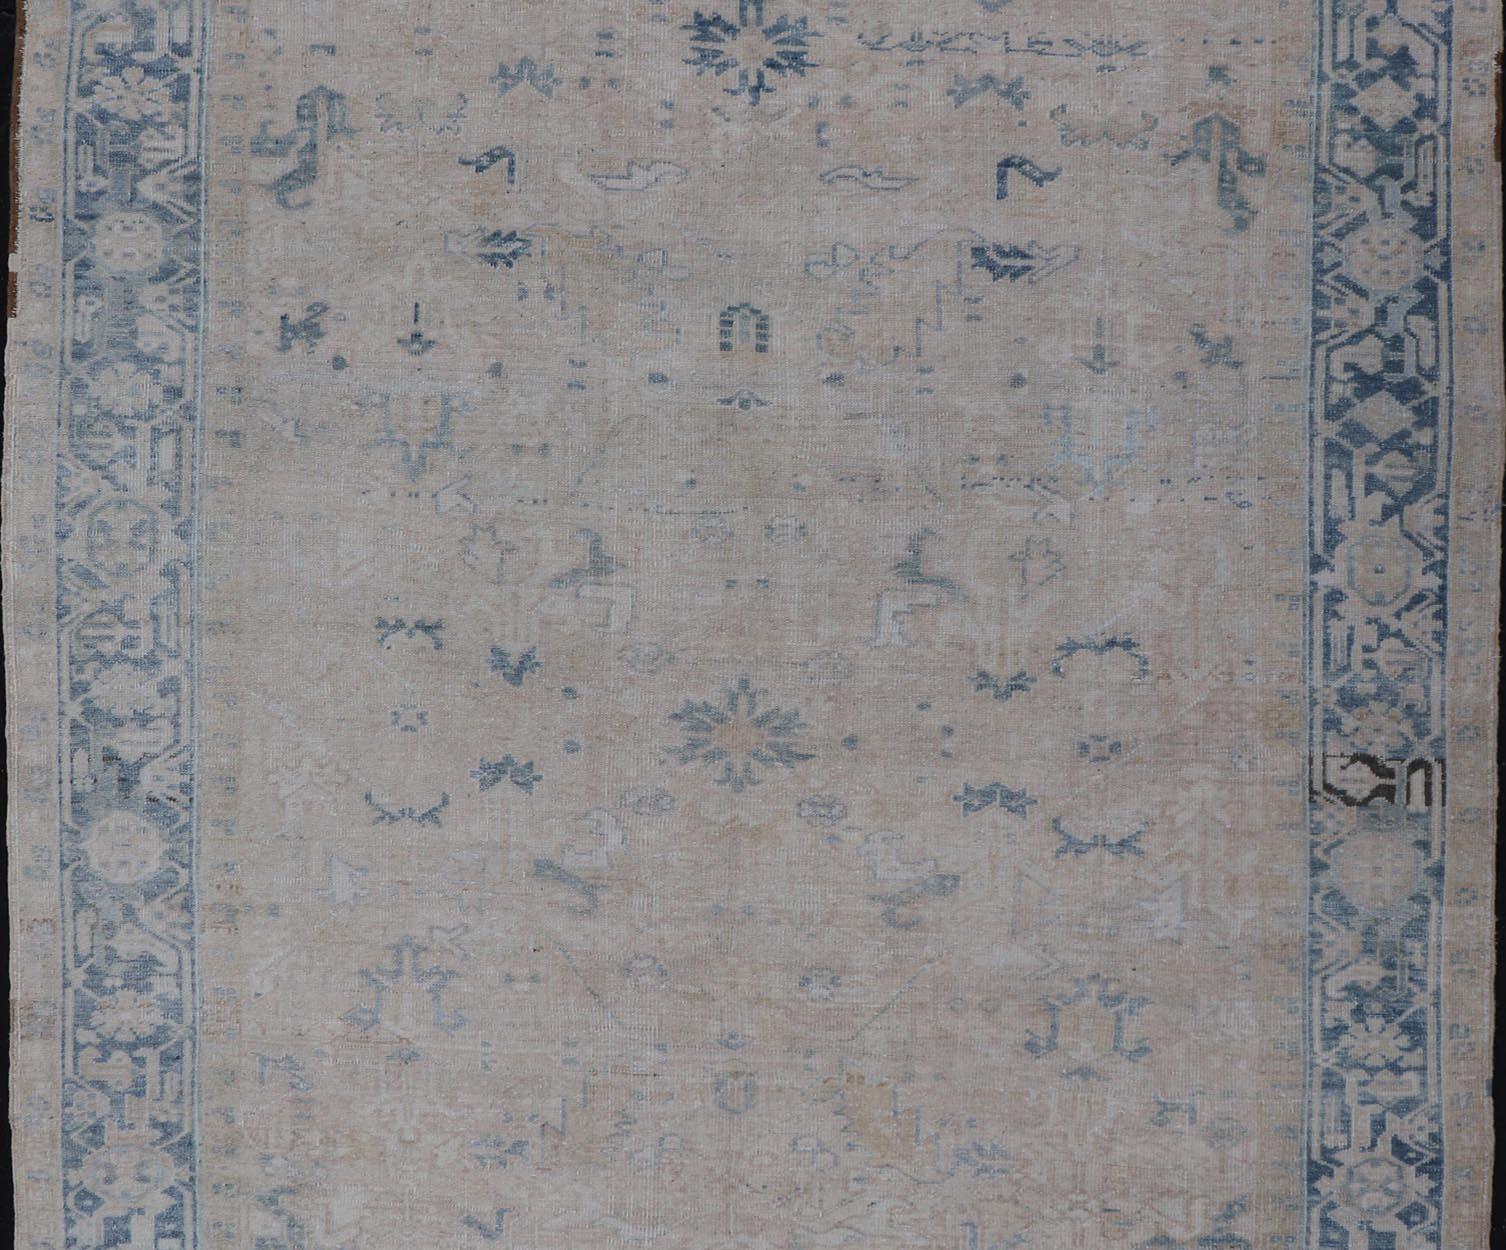 Antiker Heriz-Teppich in Blau und Creme mit Allover-Muster. Keivan Woven Arts / Teppich EMB-9622-P13579, Herkunftsland / Art: Persien / Heriz, ca. Anfang des 20. Jahrhunderts.

Maße: 7'5 x 11'5 Zoll.